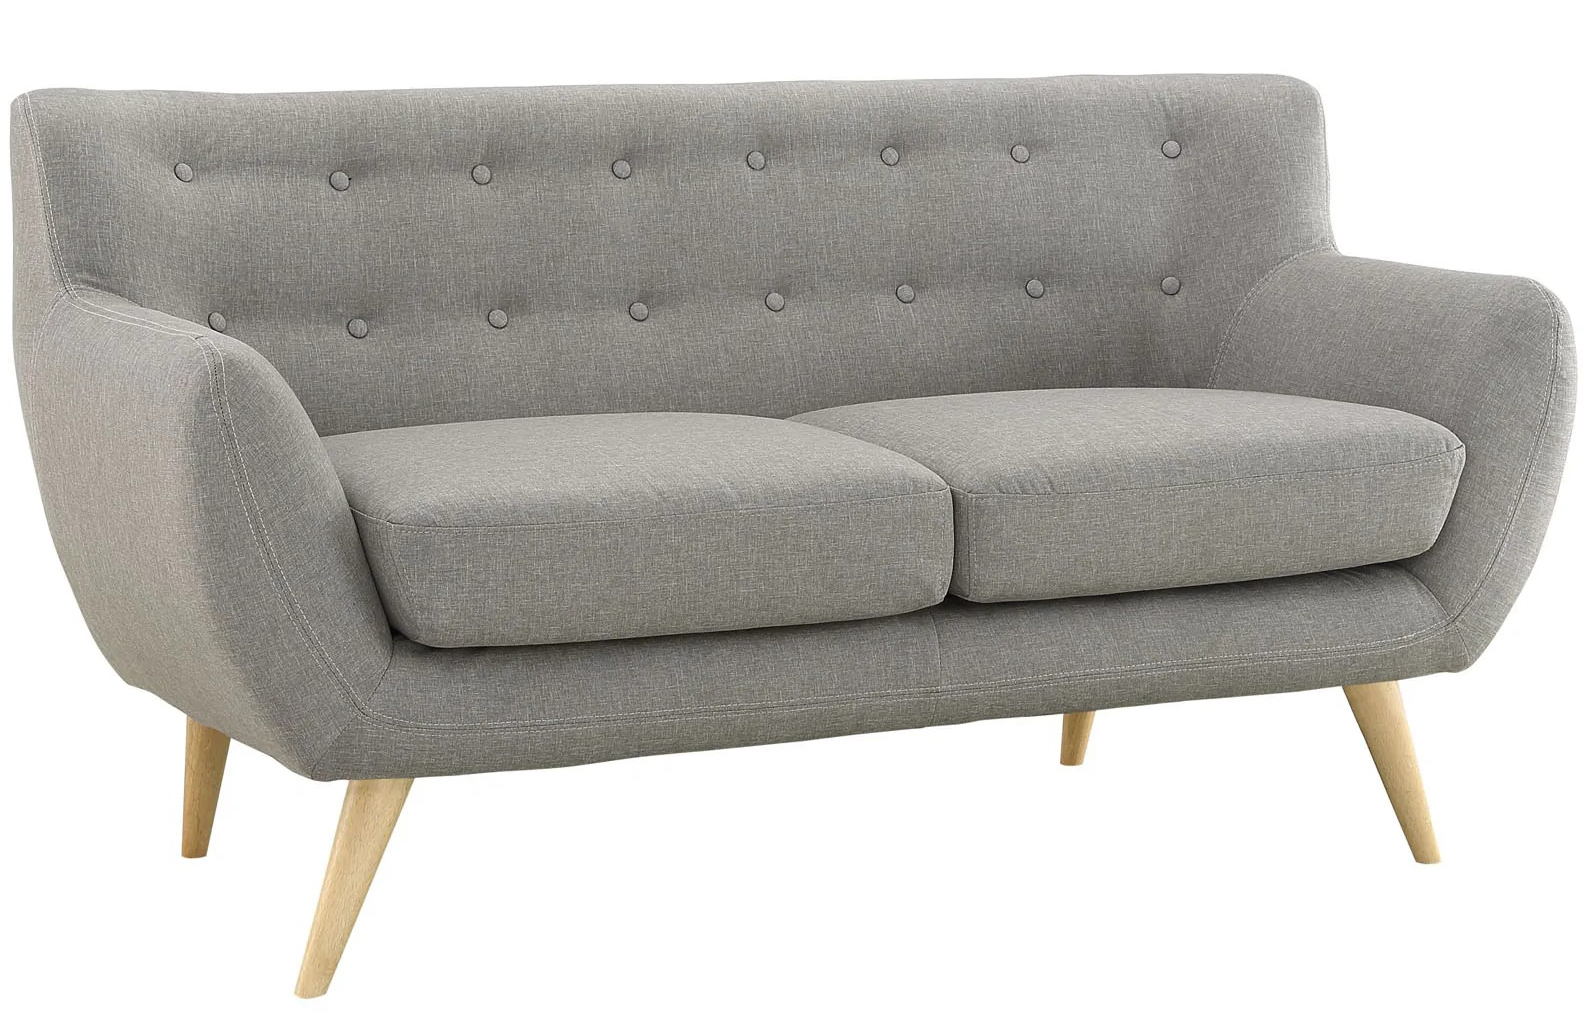 Sofa văng 2 chỗ cơ bản 16 chấm màu xám